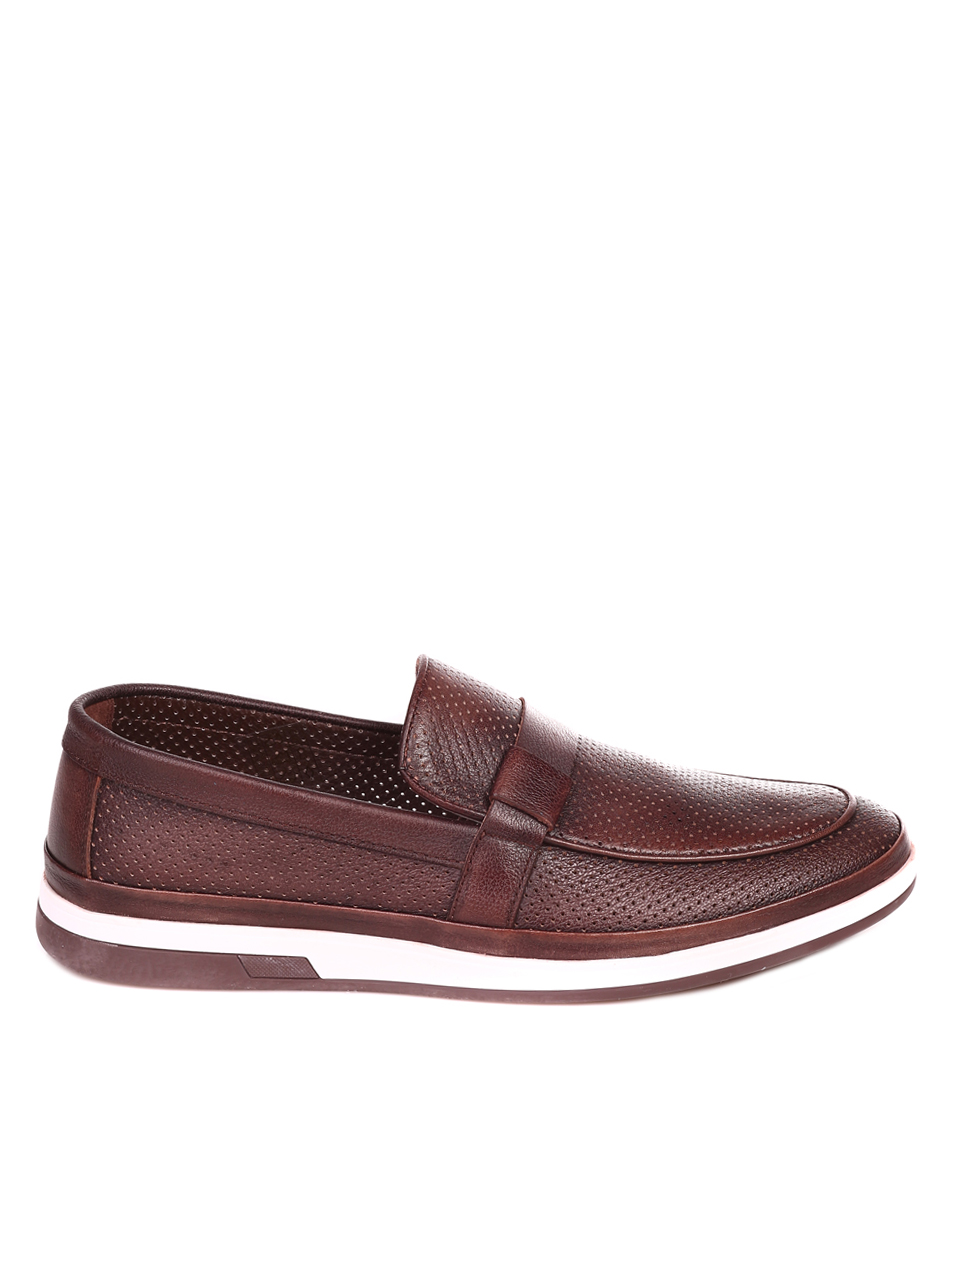 Ежедневни мъжки обувки от естествена кожа 7AT-22285 brown